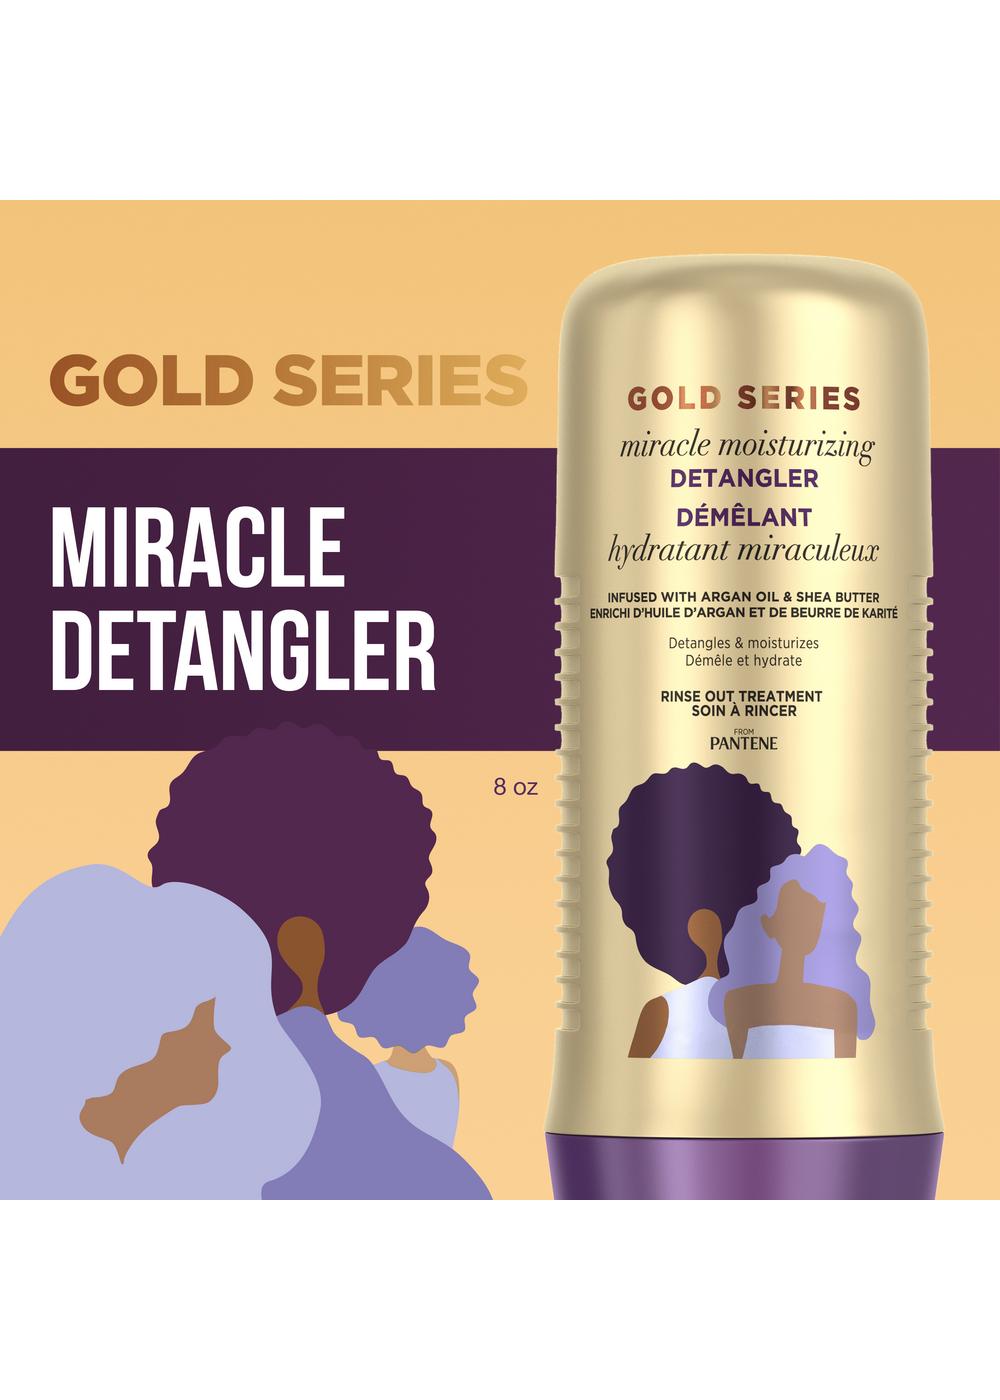 Pantene Gold Series Miracle Detangler; image 4 of 11